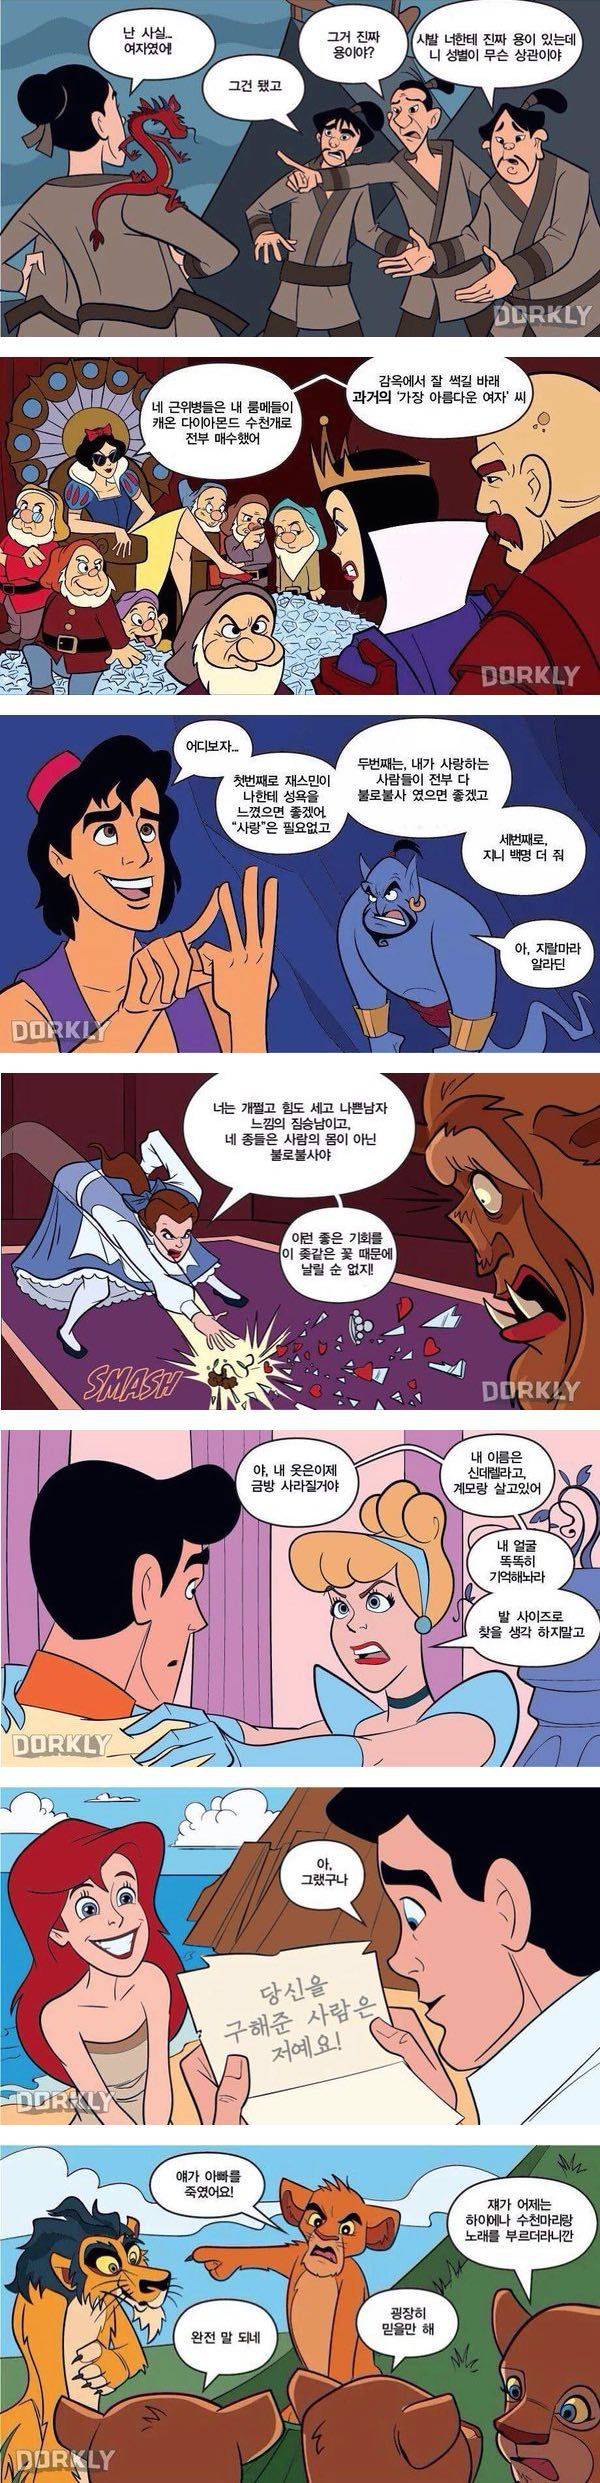 디즈니 만화의 현실적 전개.jpg | 인스티즈